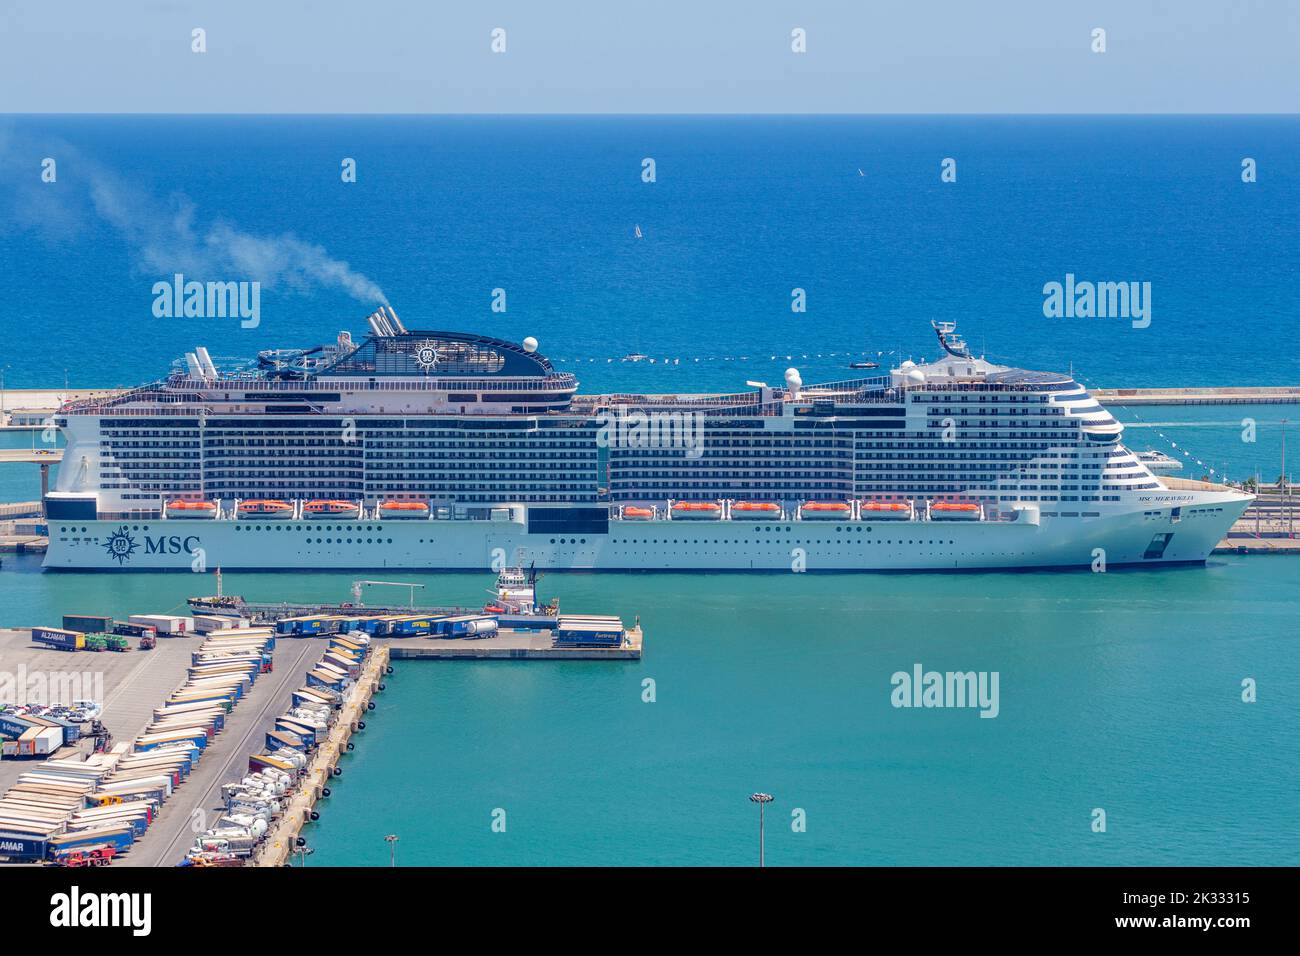 MSC Meraviglia Cruise ship in port at Barcelona, Spain Stock Photo